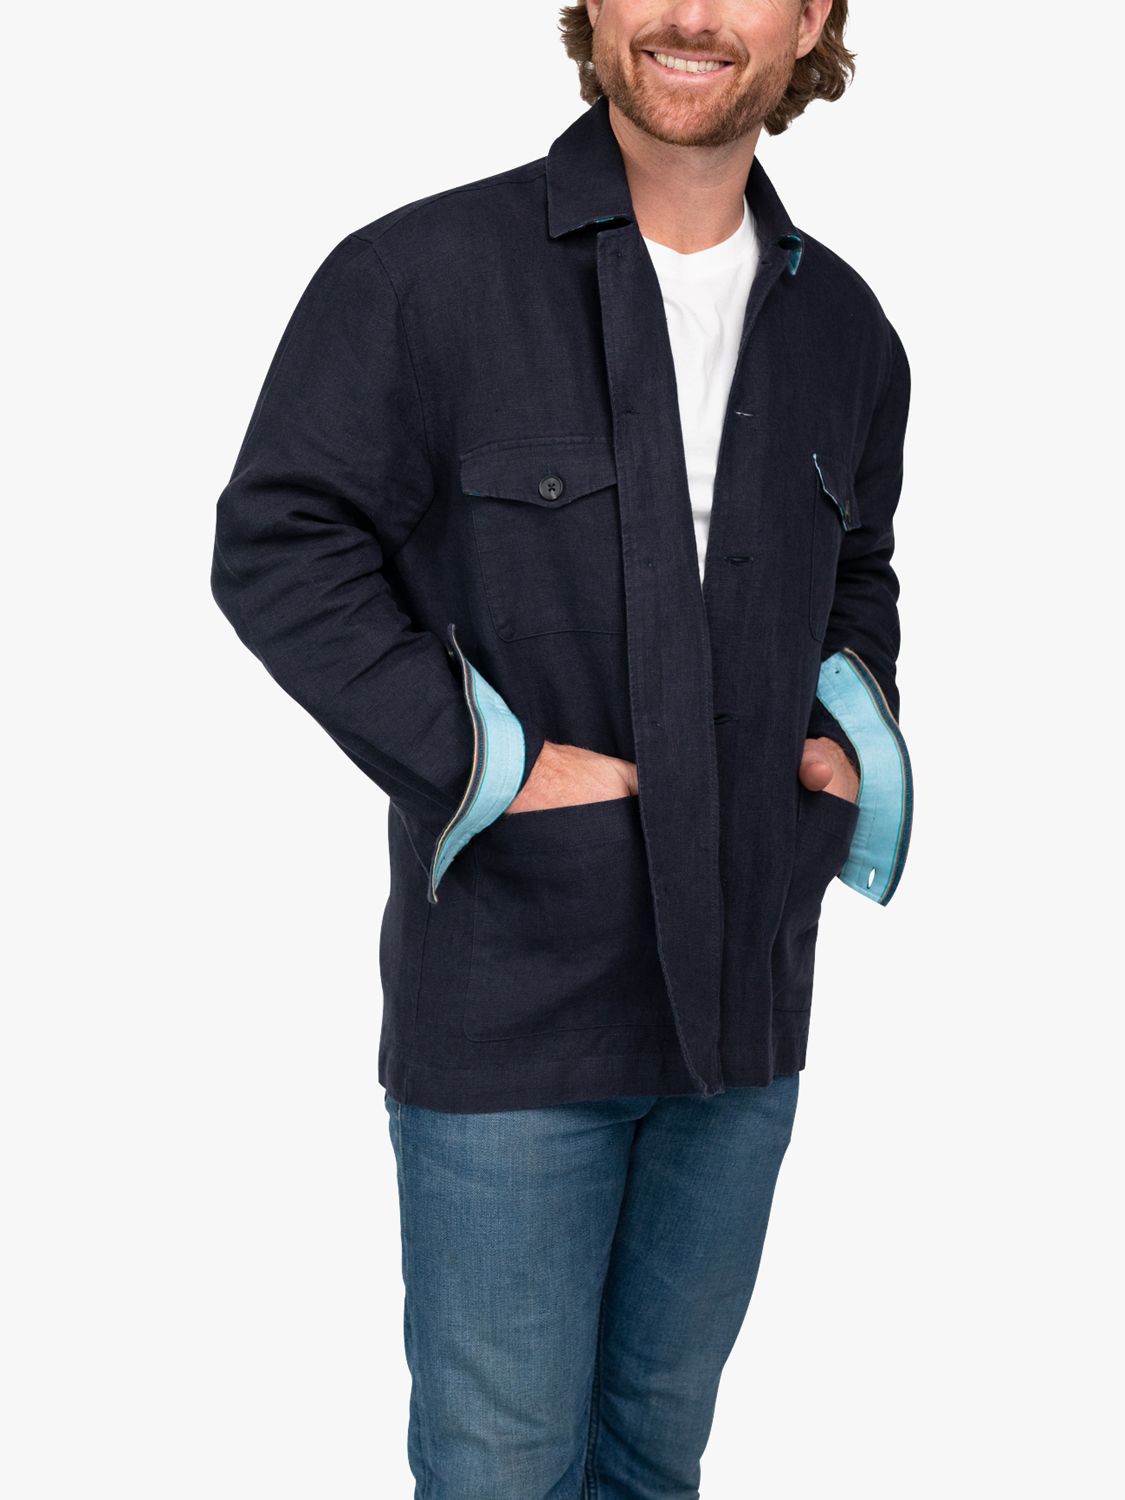 Buy KOY Linen Overshirt Jacket, Navy Online at johnlewis.com